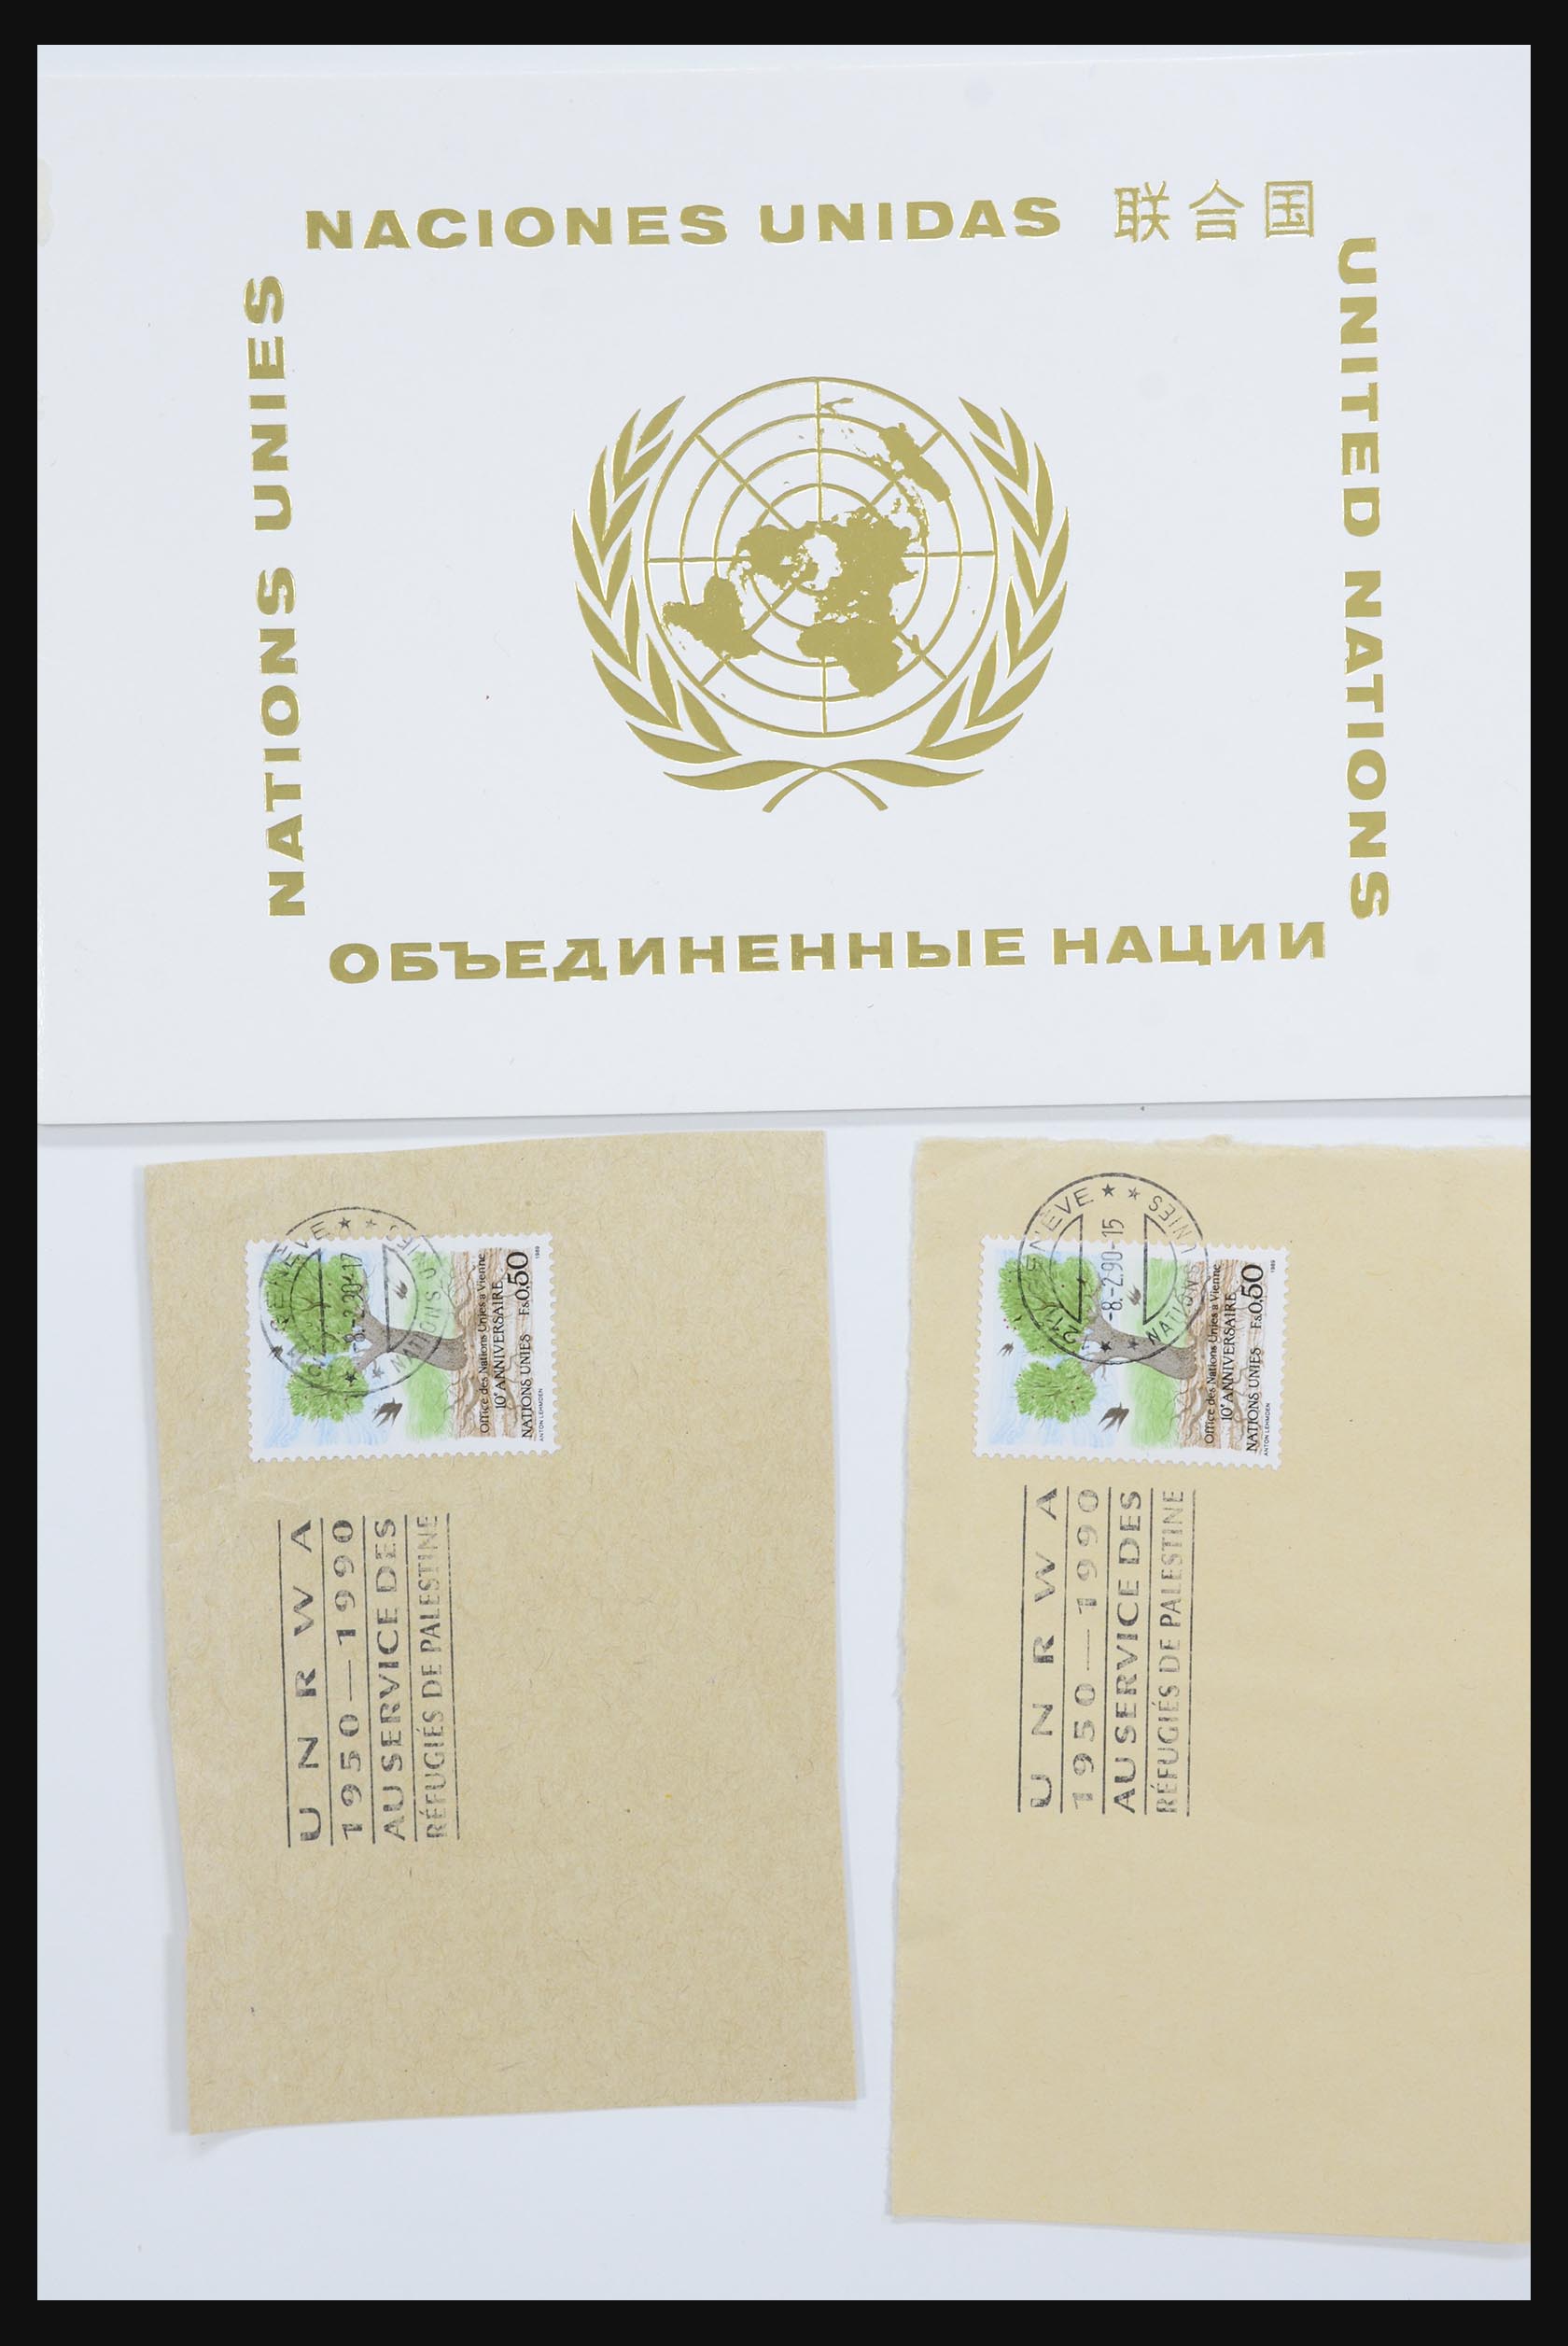 31905 986 - 31905 Verenigde Naties 1951-2012.